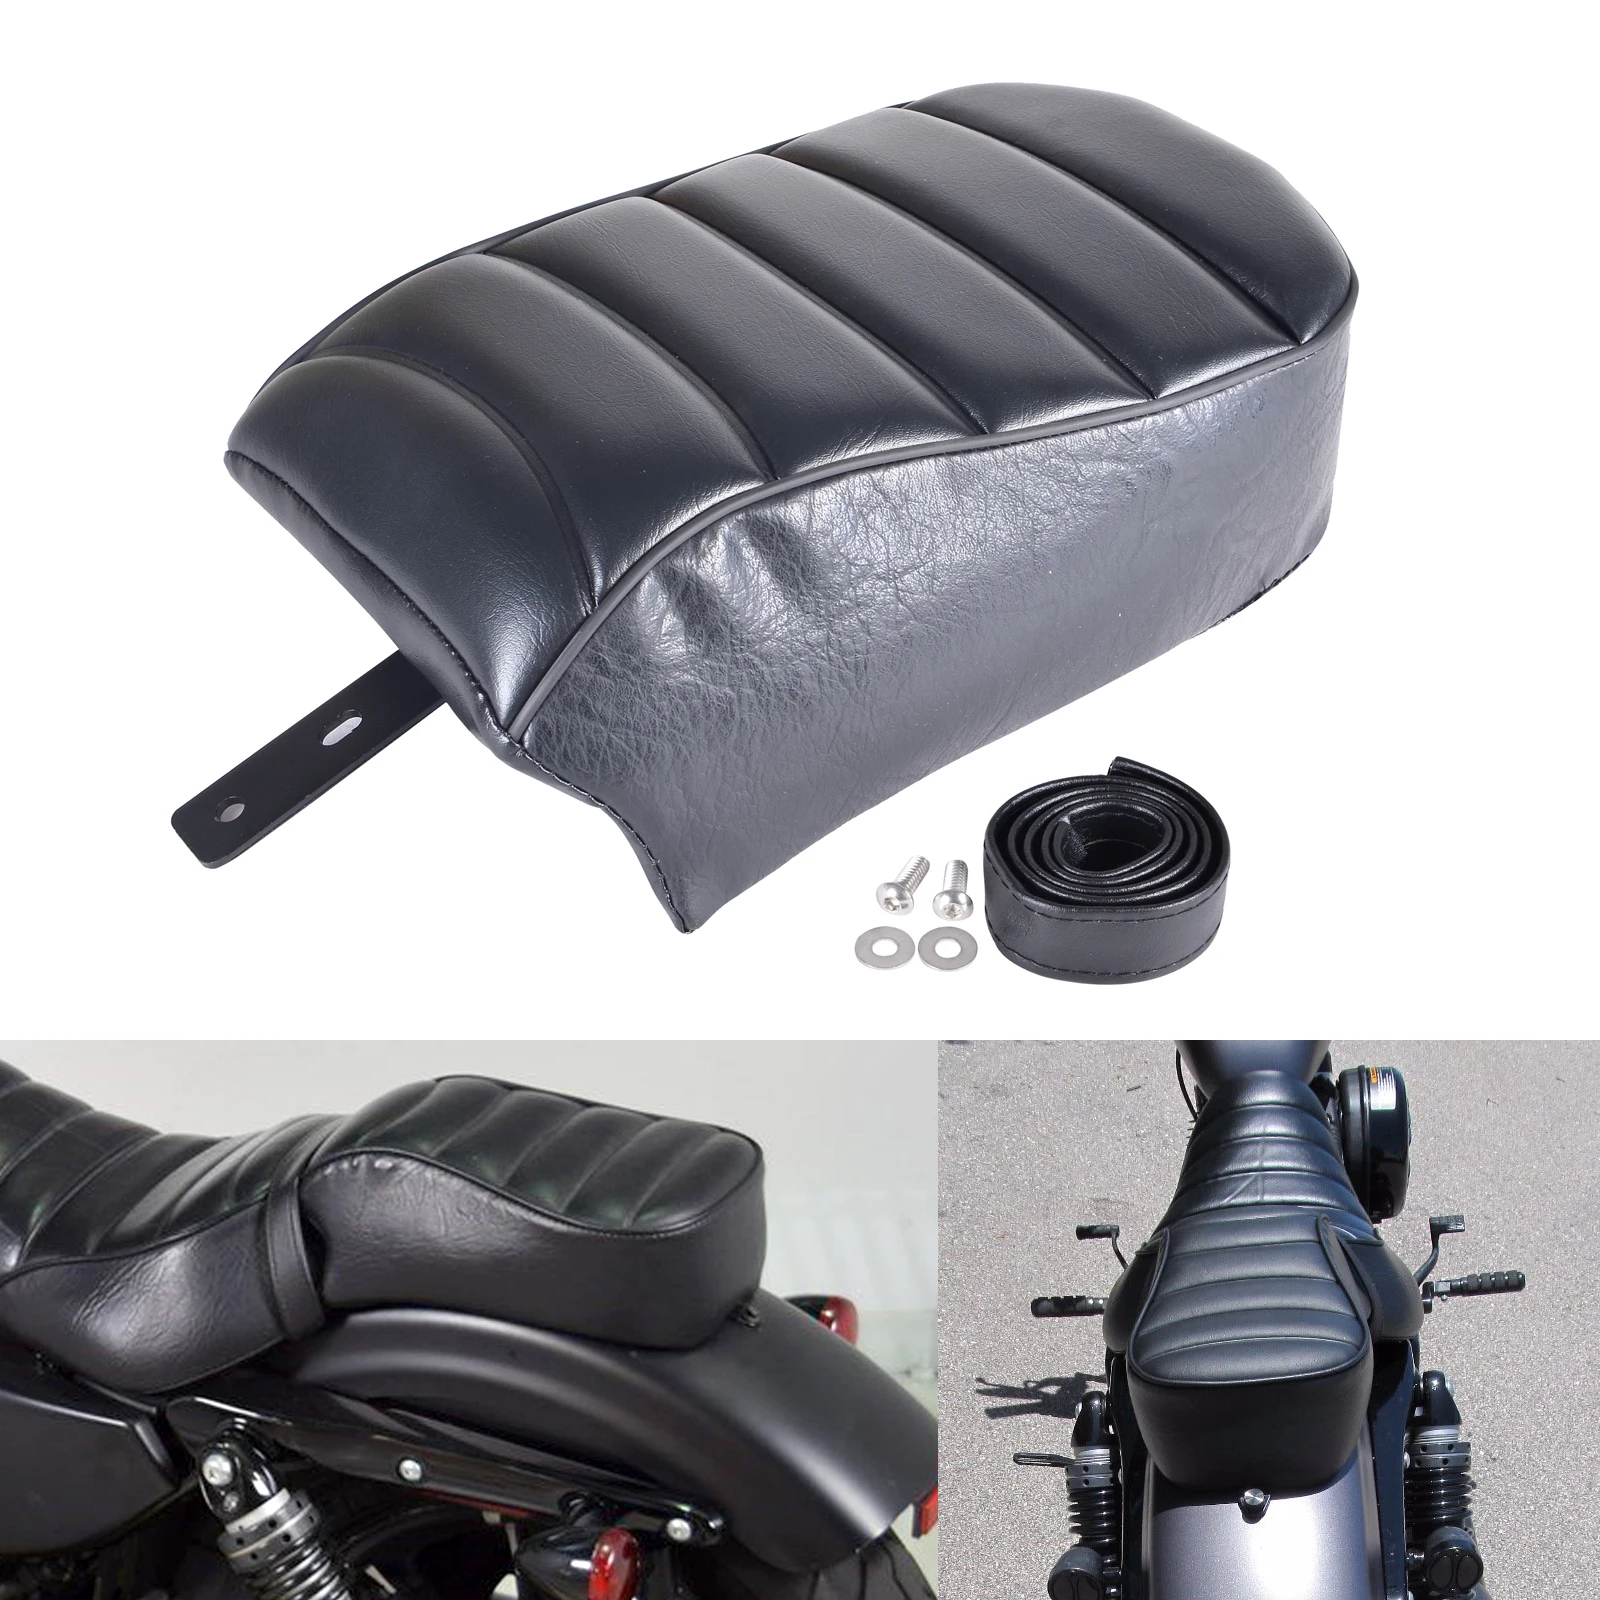 Black Leather Rear Passenger Pillion Seat Suit Motorcycle Accessories Moto Parts for H-D S-portst-er Iron 883 XL883N 2016-2019